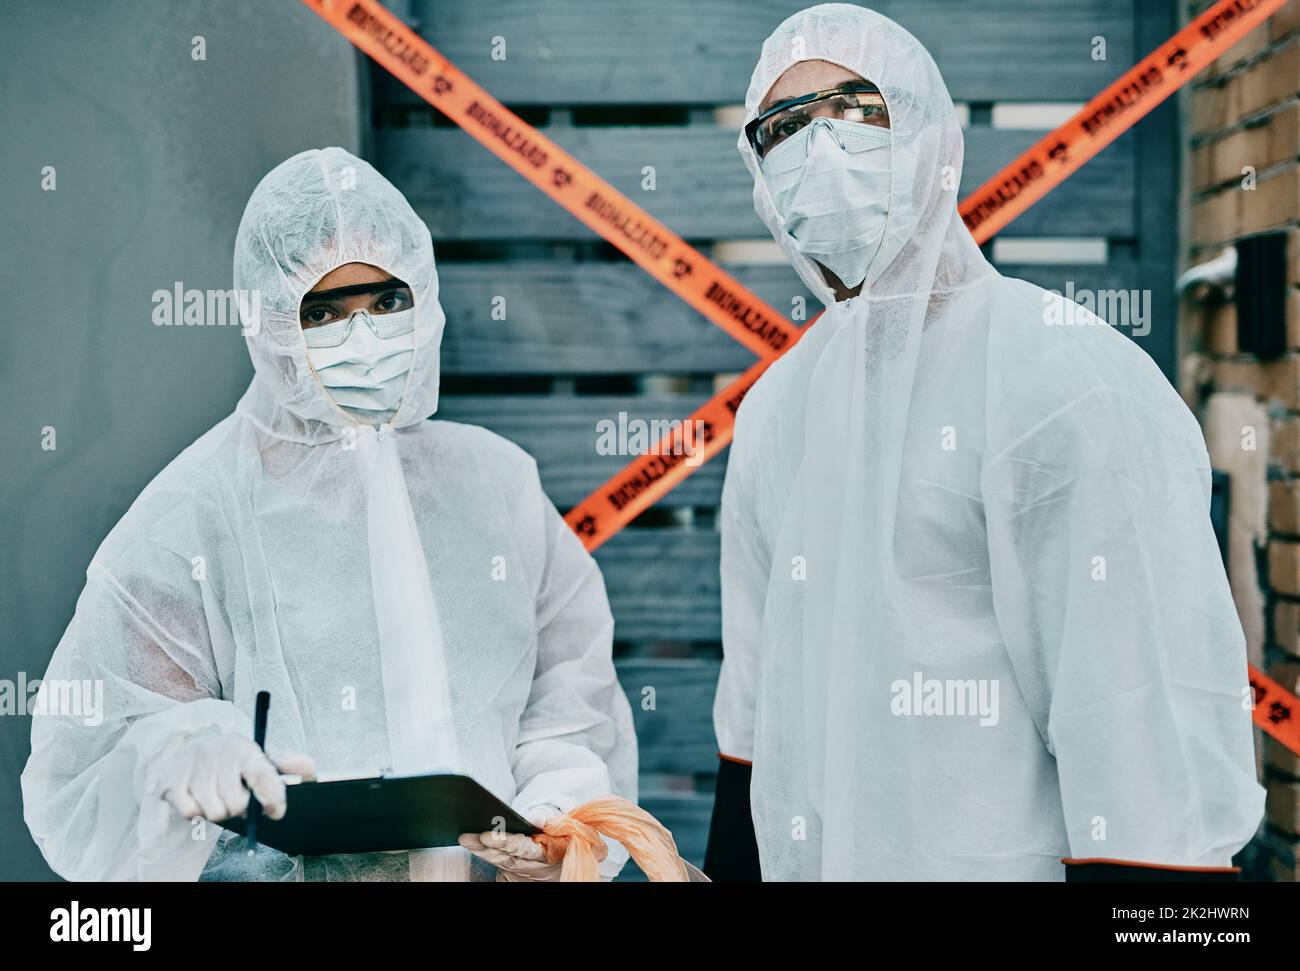 Lavorare insieme per salvare il mondo. Shot di due operatori sanitari che indossano tute di nocciolo che lavorano insieme per controllare un focolaio. Foto Stock